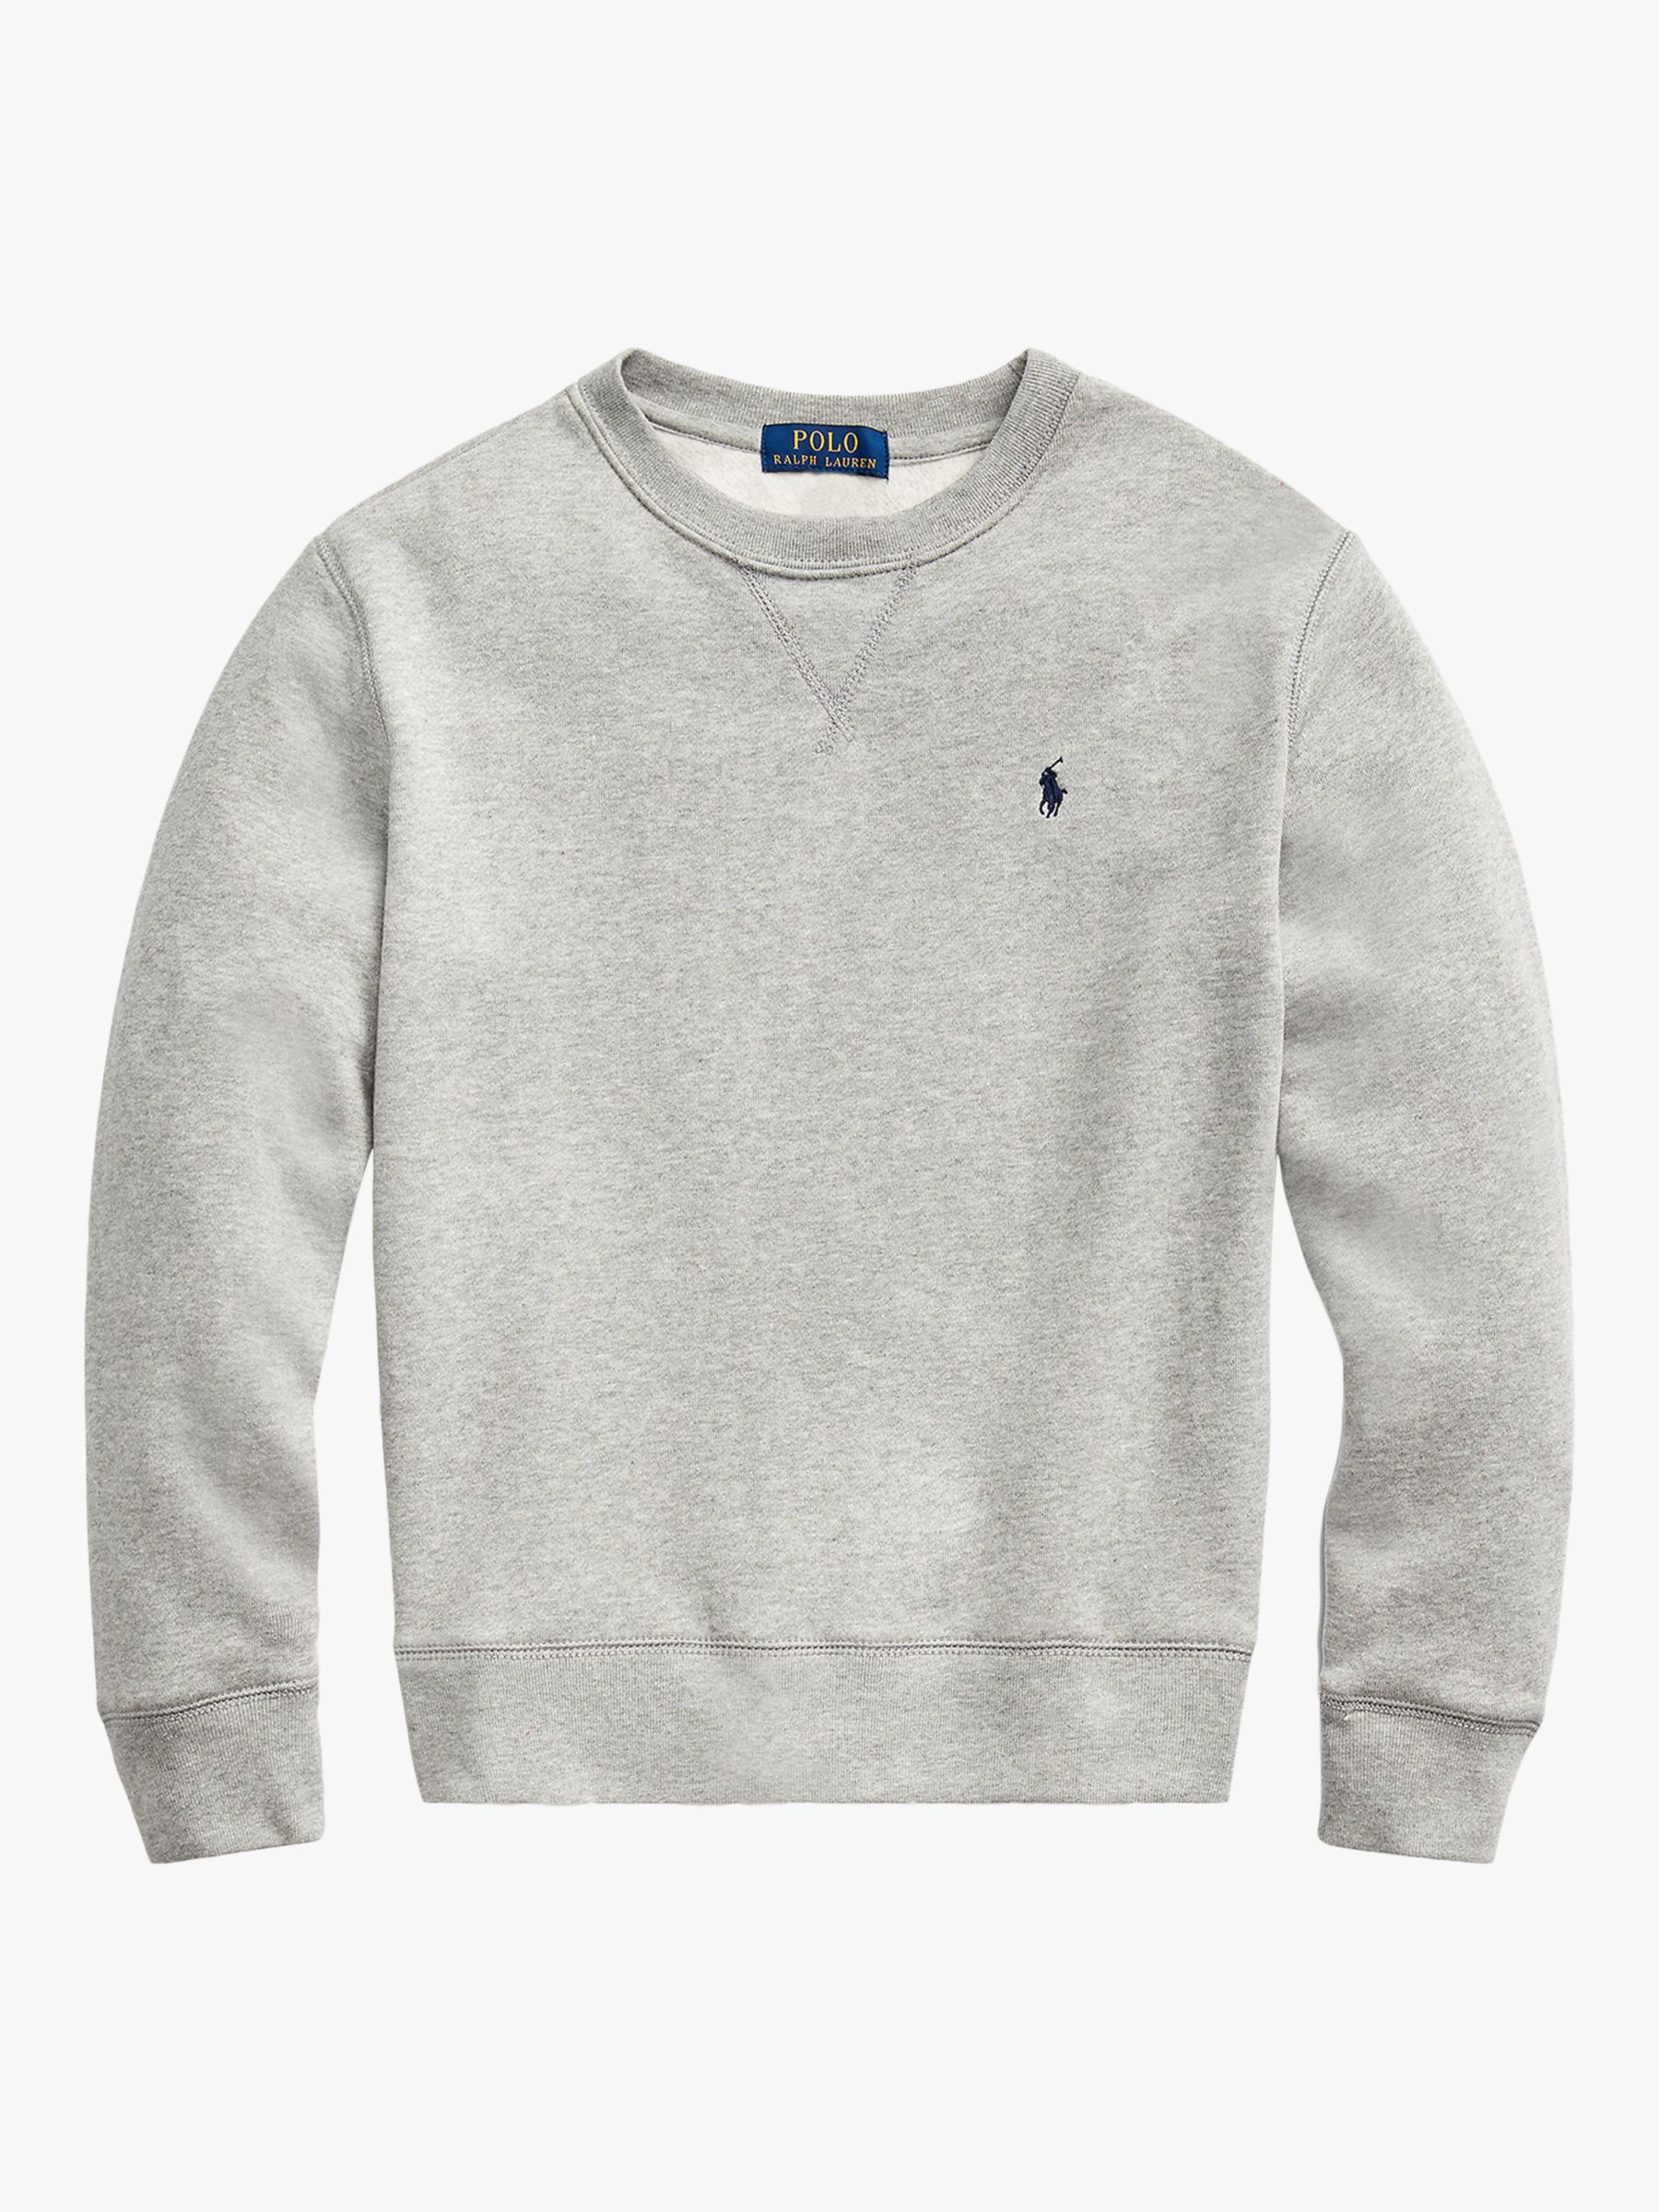 Ralph Lauren Kids' Classic Sweatshirt, Grey, 2 years